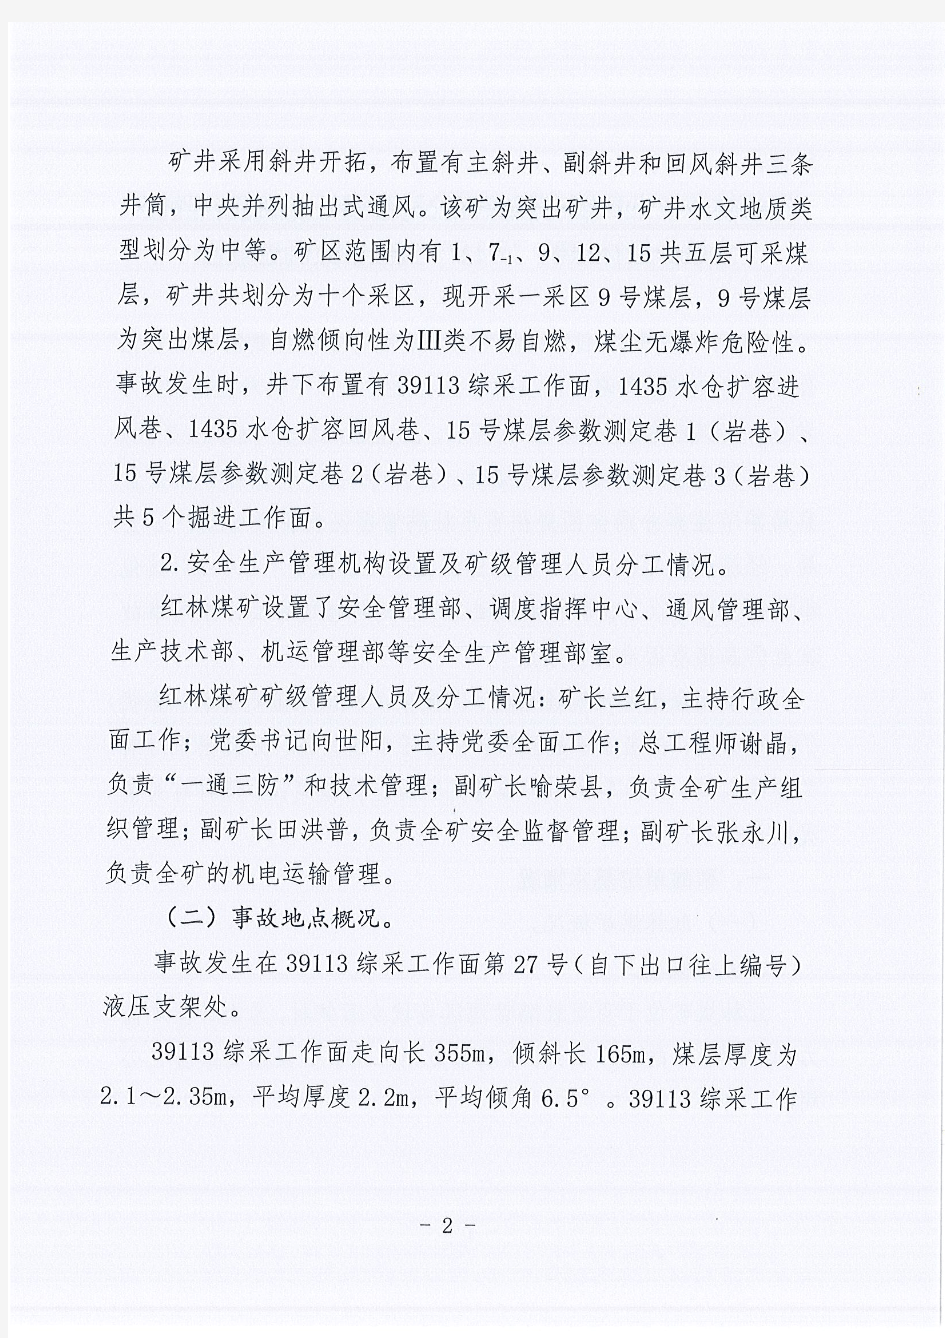 贵州林东矿业集团有限责任公司百里杜鹃风景名胜区金坡乡红林煤矿“2·18”其他事故调查报告